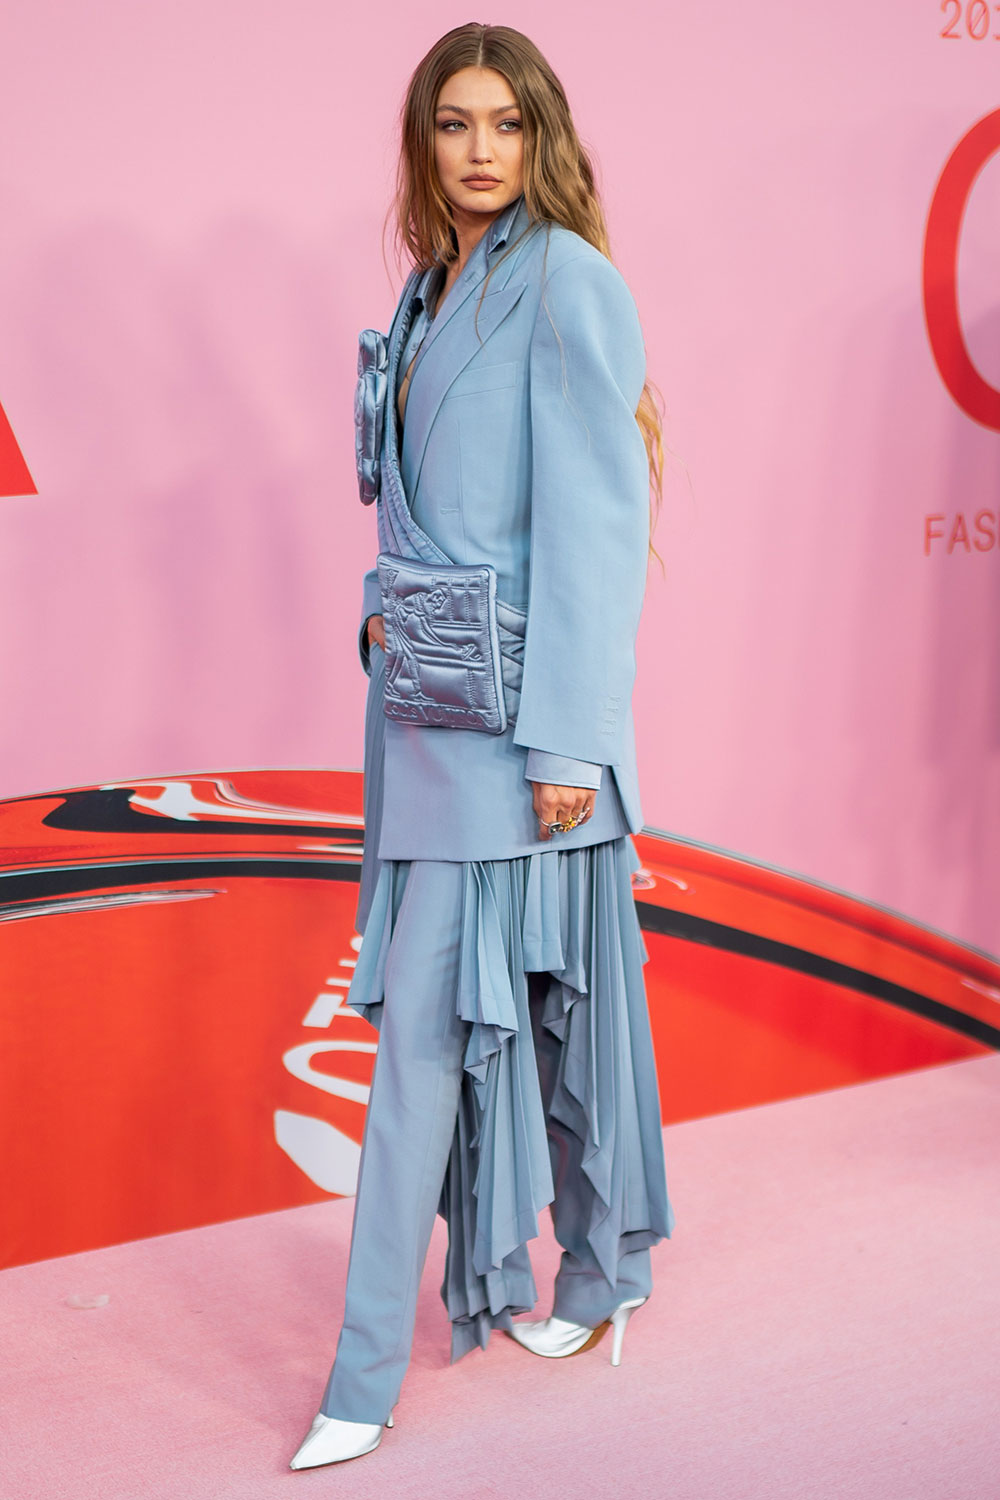 Gigi Hadid Oversized Blazer Style